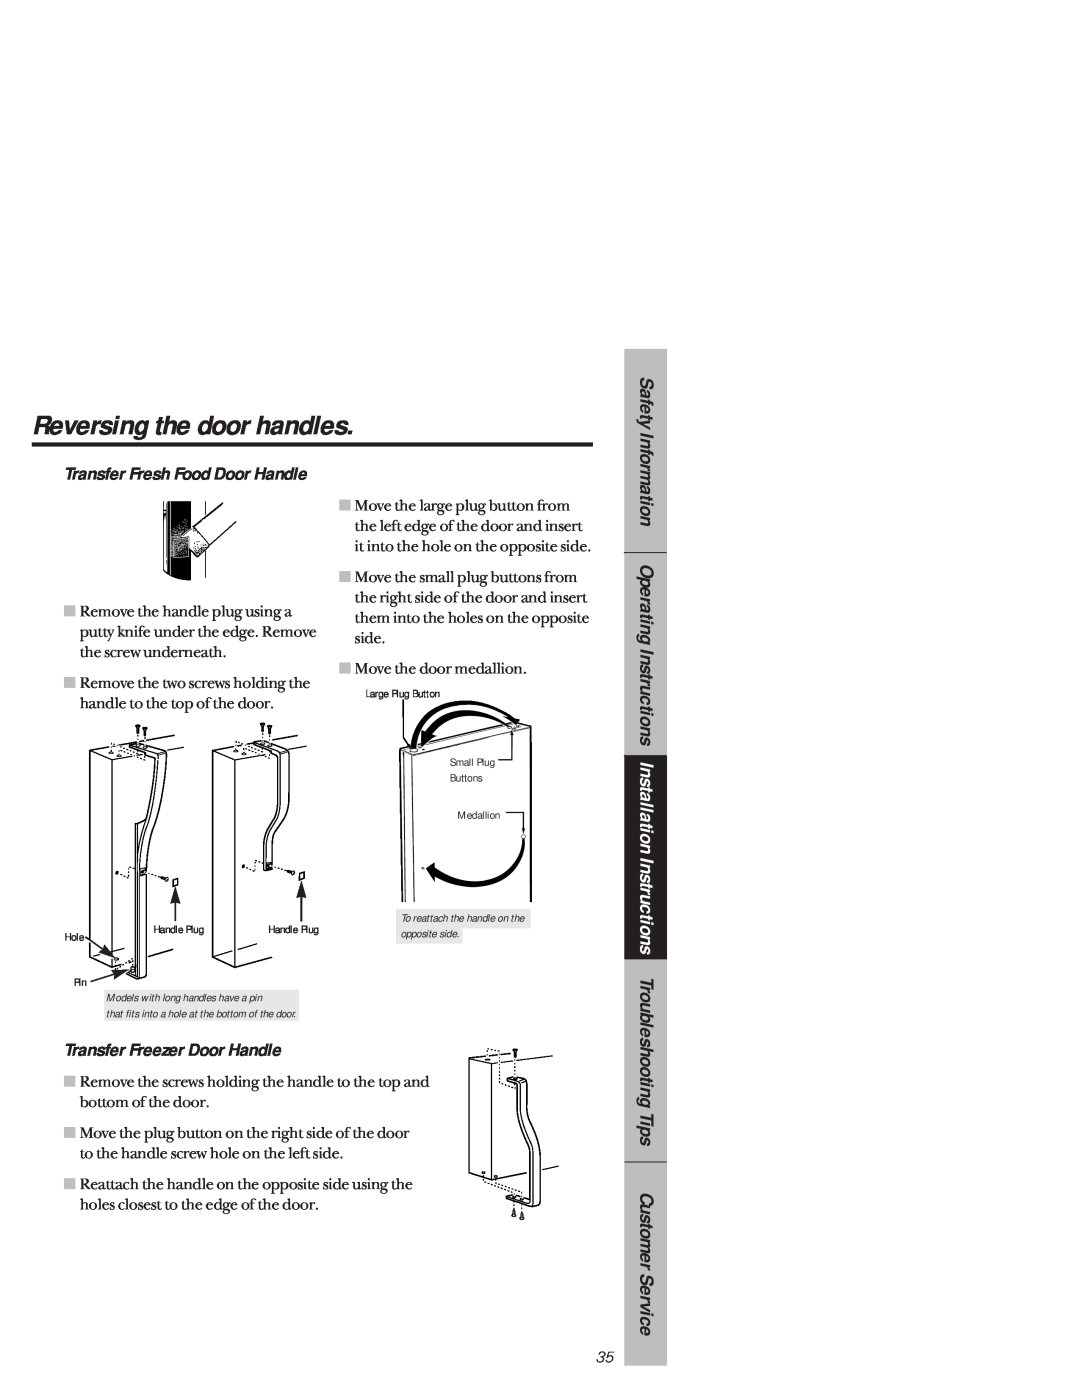 GE 1825 Reversing the door handles, Safety, Information Operating Instructions Installation, Transfer Freezer Door Handle 